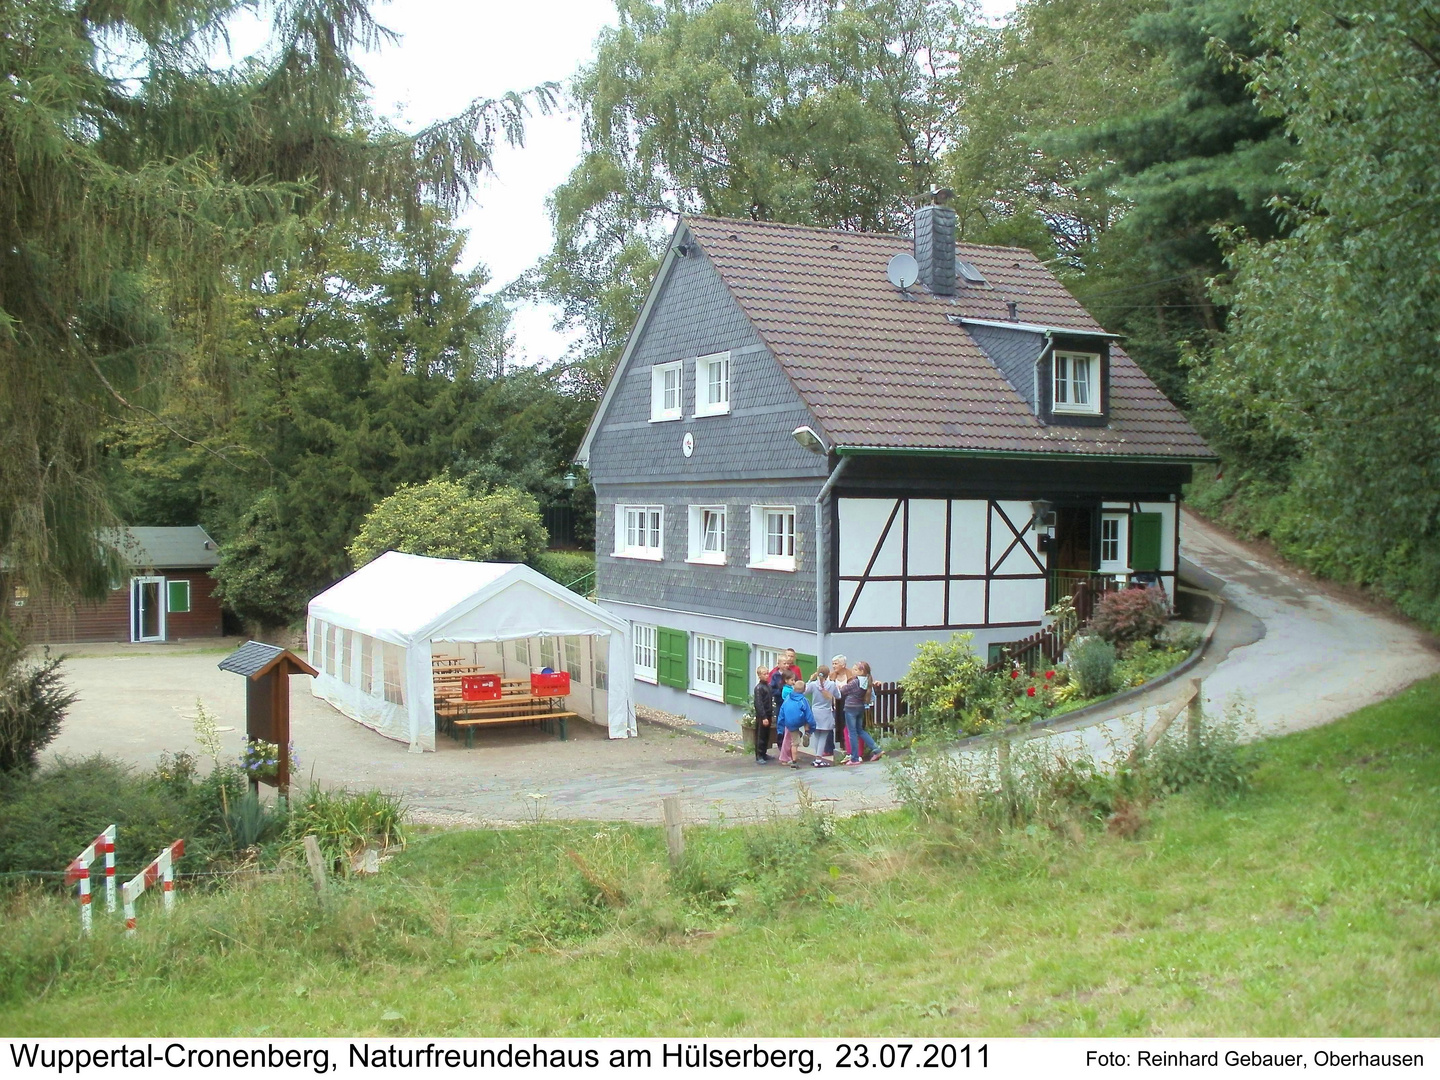 Wuppertal-Cronenberg, Naturfreundehaus am Hülsberg, 2011